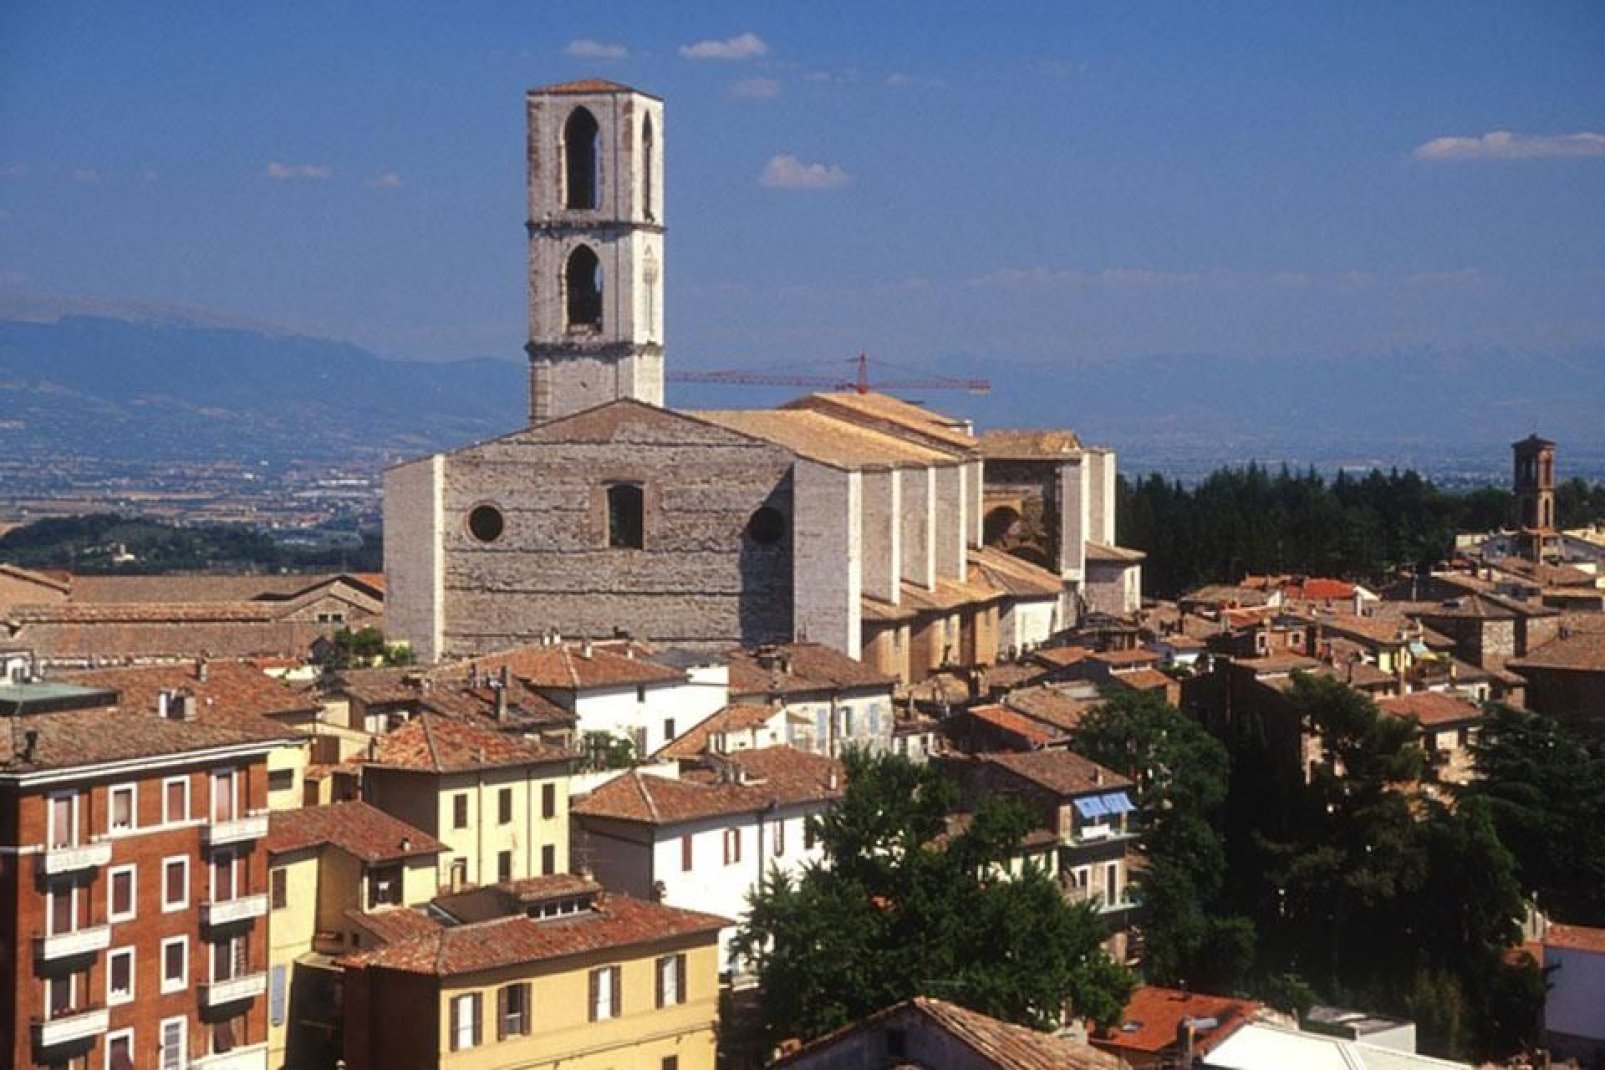 Perugia, die Hauptstadt von Umbrien, ist eine geschichtsträchtige Kunststadt mit zahlreichen Sehenswürdigkeiten.